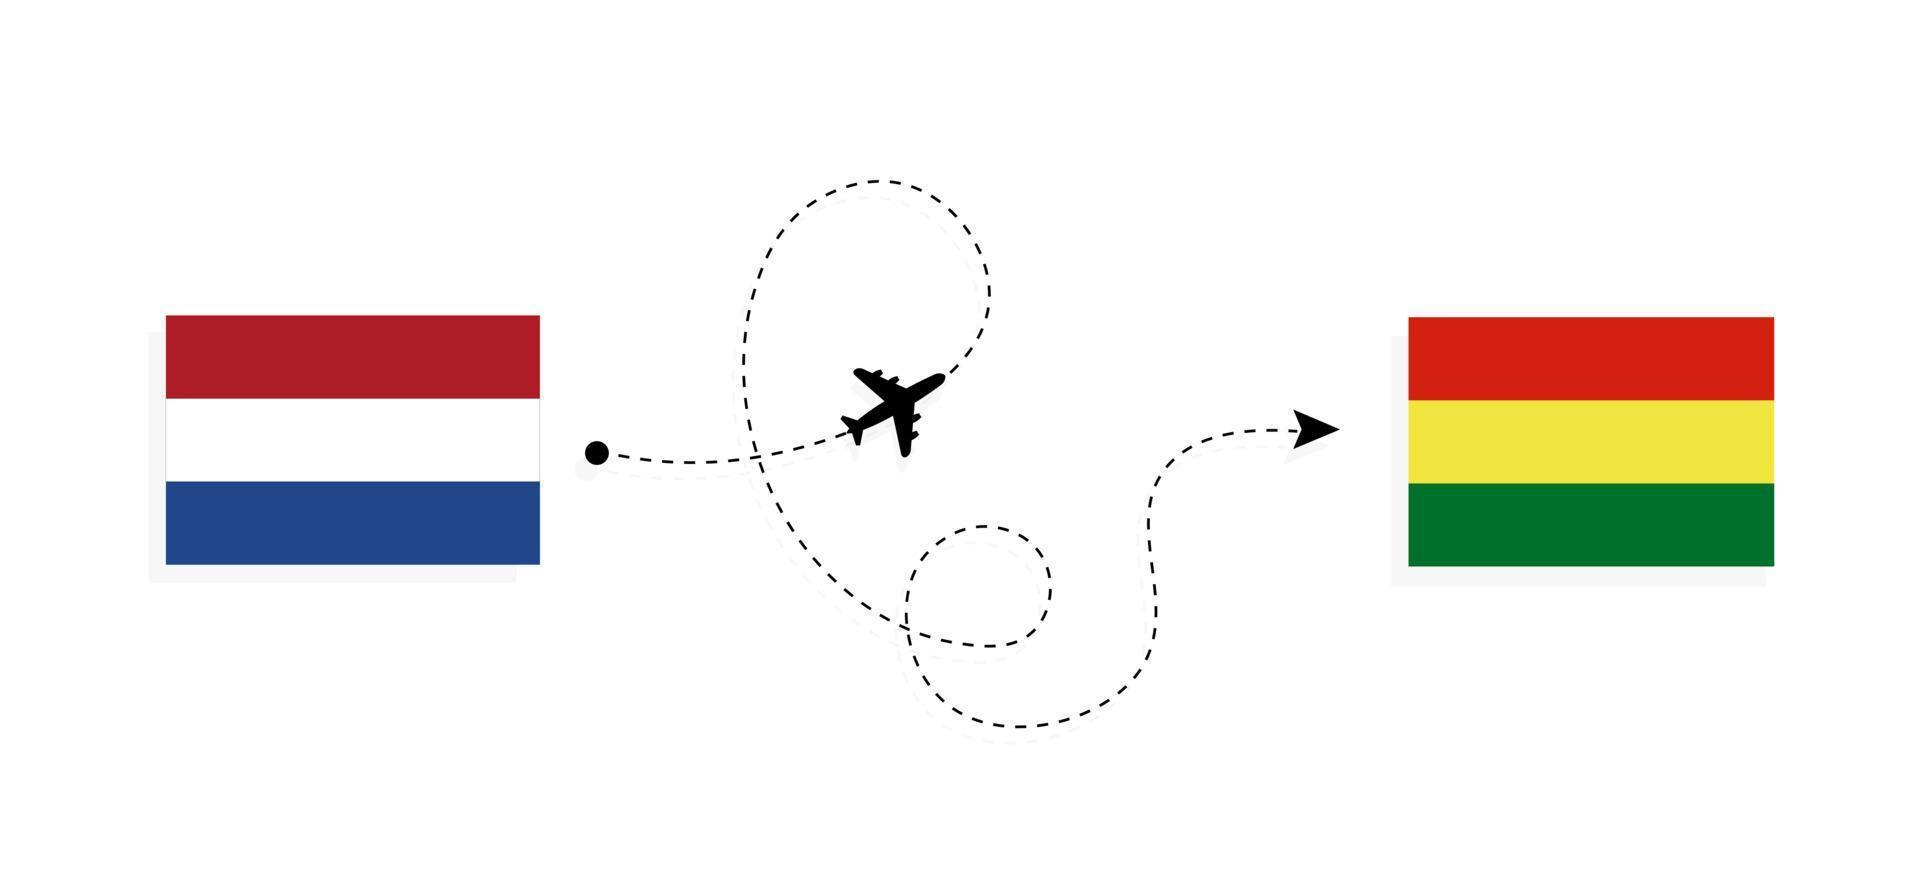 flyg och resor från Nederländerna till Bolivia med passagerarflygplan vektor